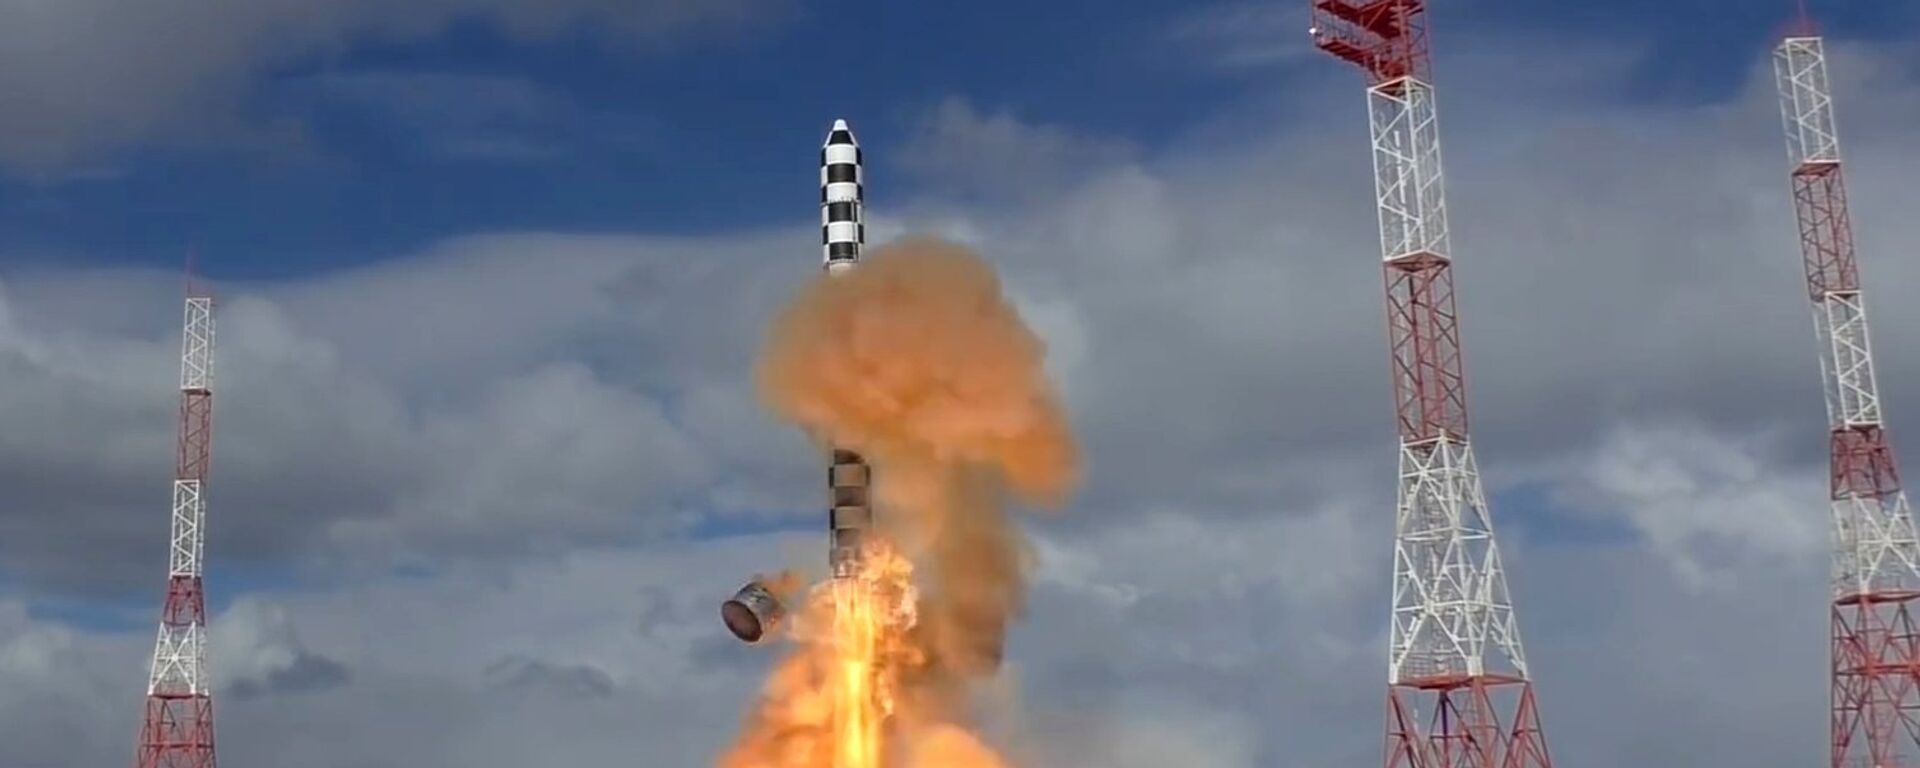 Лансирање тешке интерконтиненталне балистичке ракет Сармат са космодрома Плесецк у Архангелској области Русије - Sputnik Србија, 1920, 07.08.2021